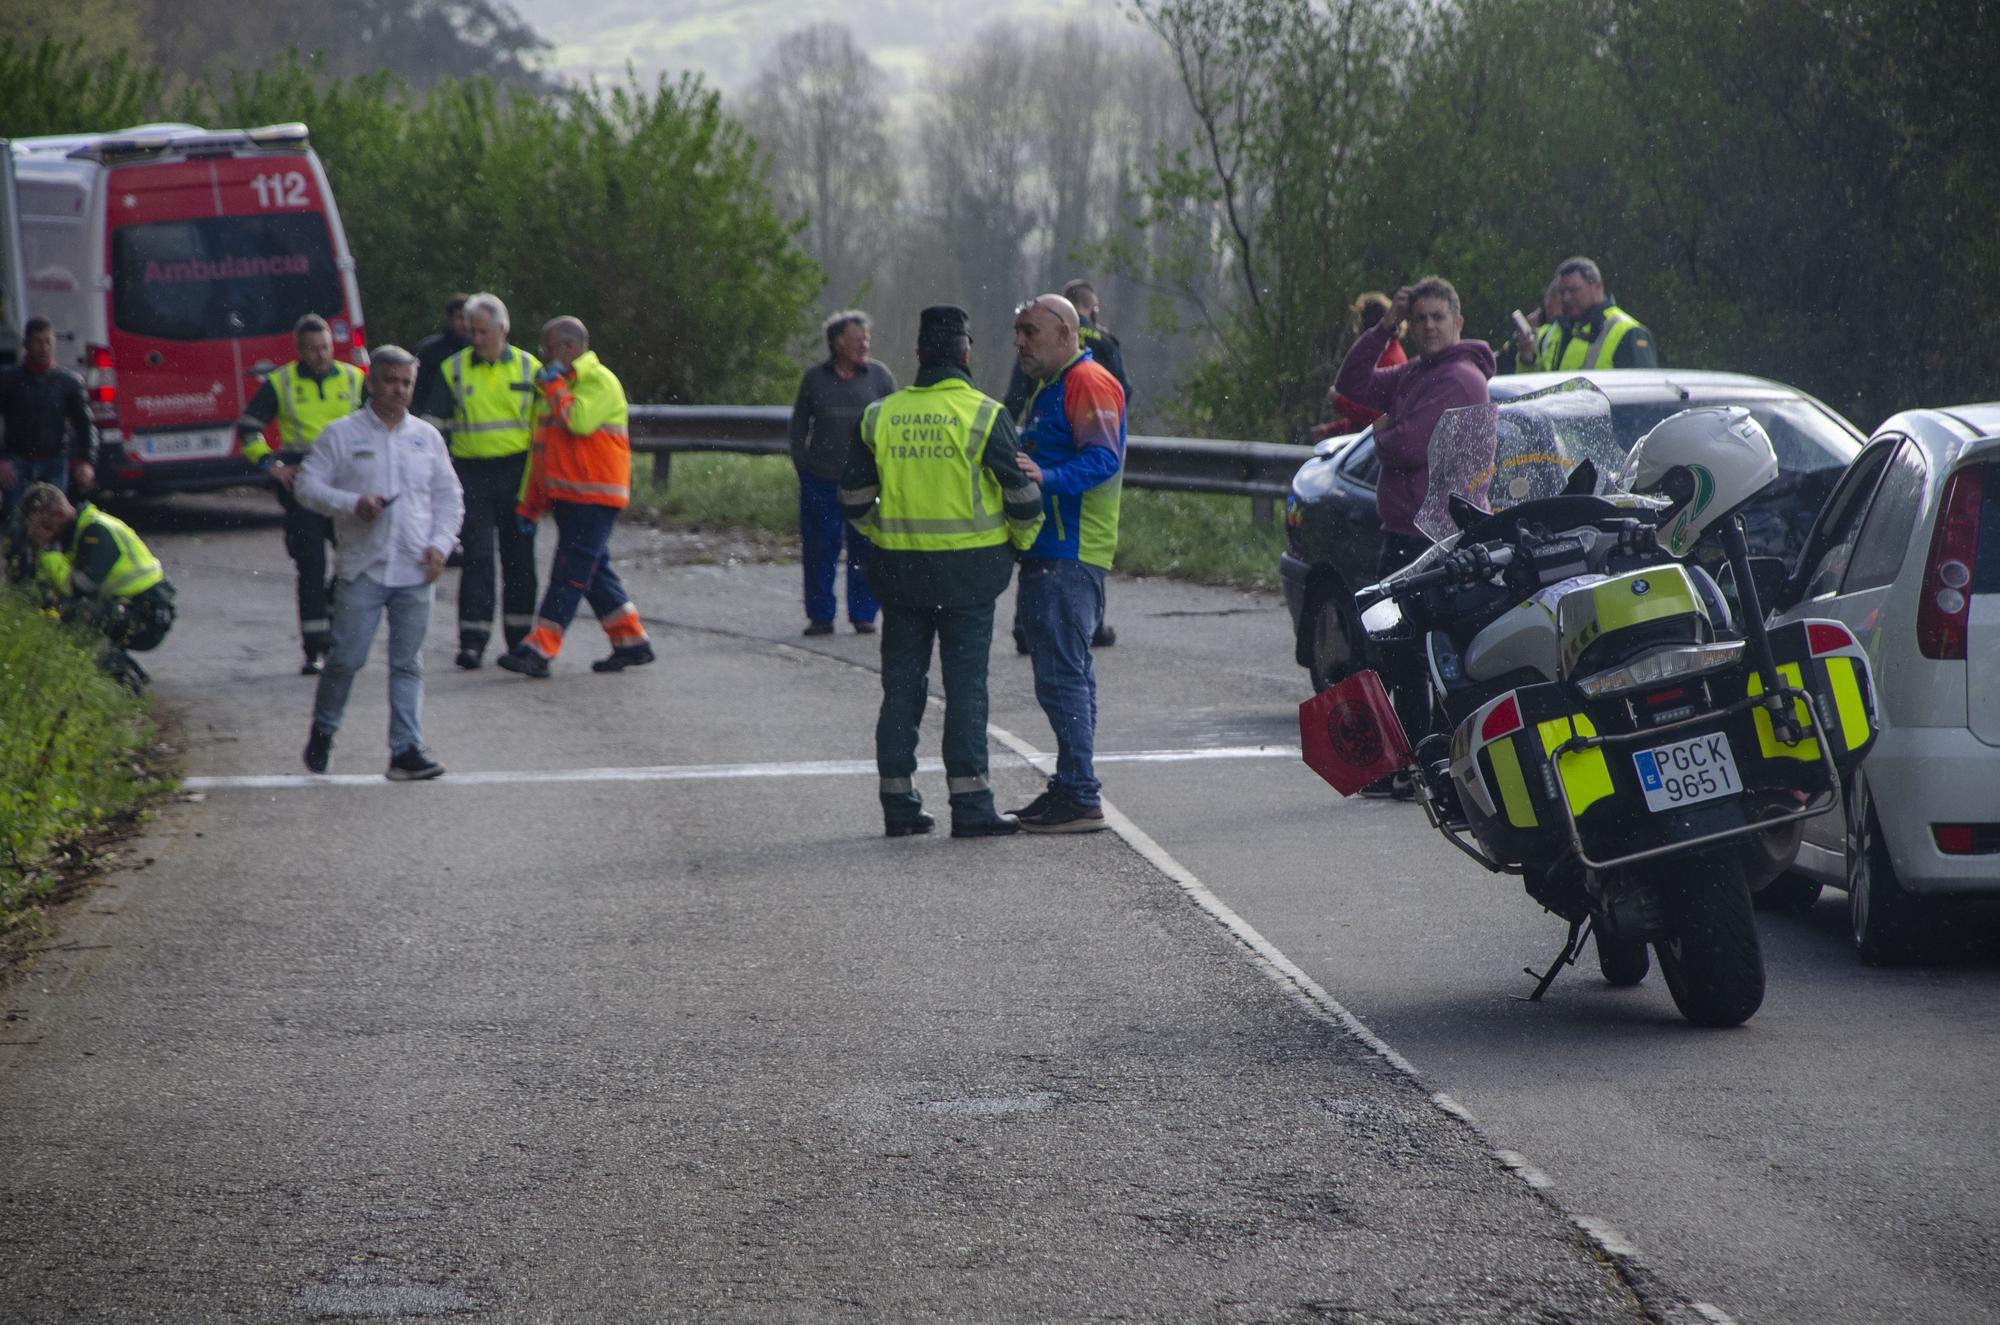 Tragedia en una carrera ciclista en Pravia: un hombre irrumpe con un coche robado y mata a un guardia civil tras arrollarlo